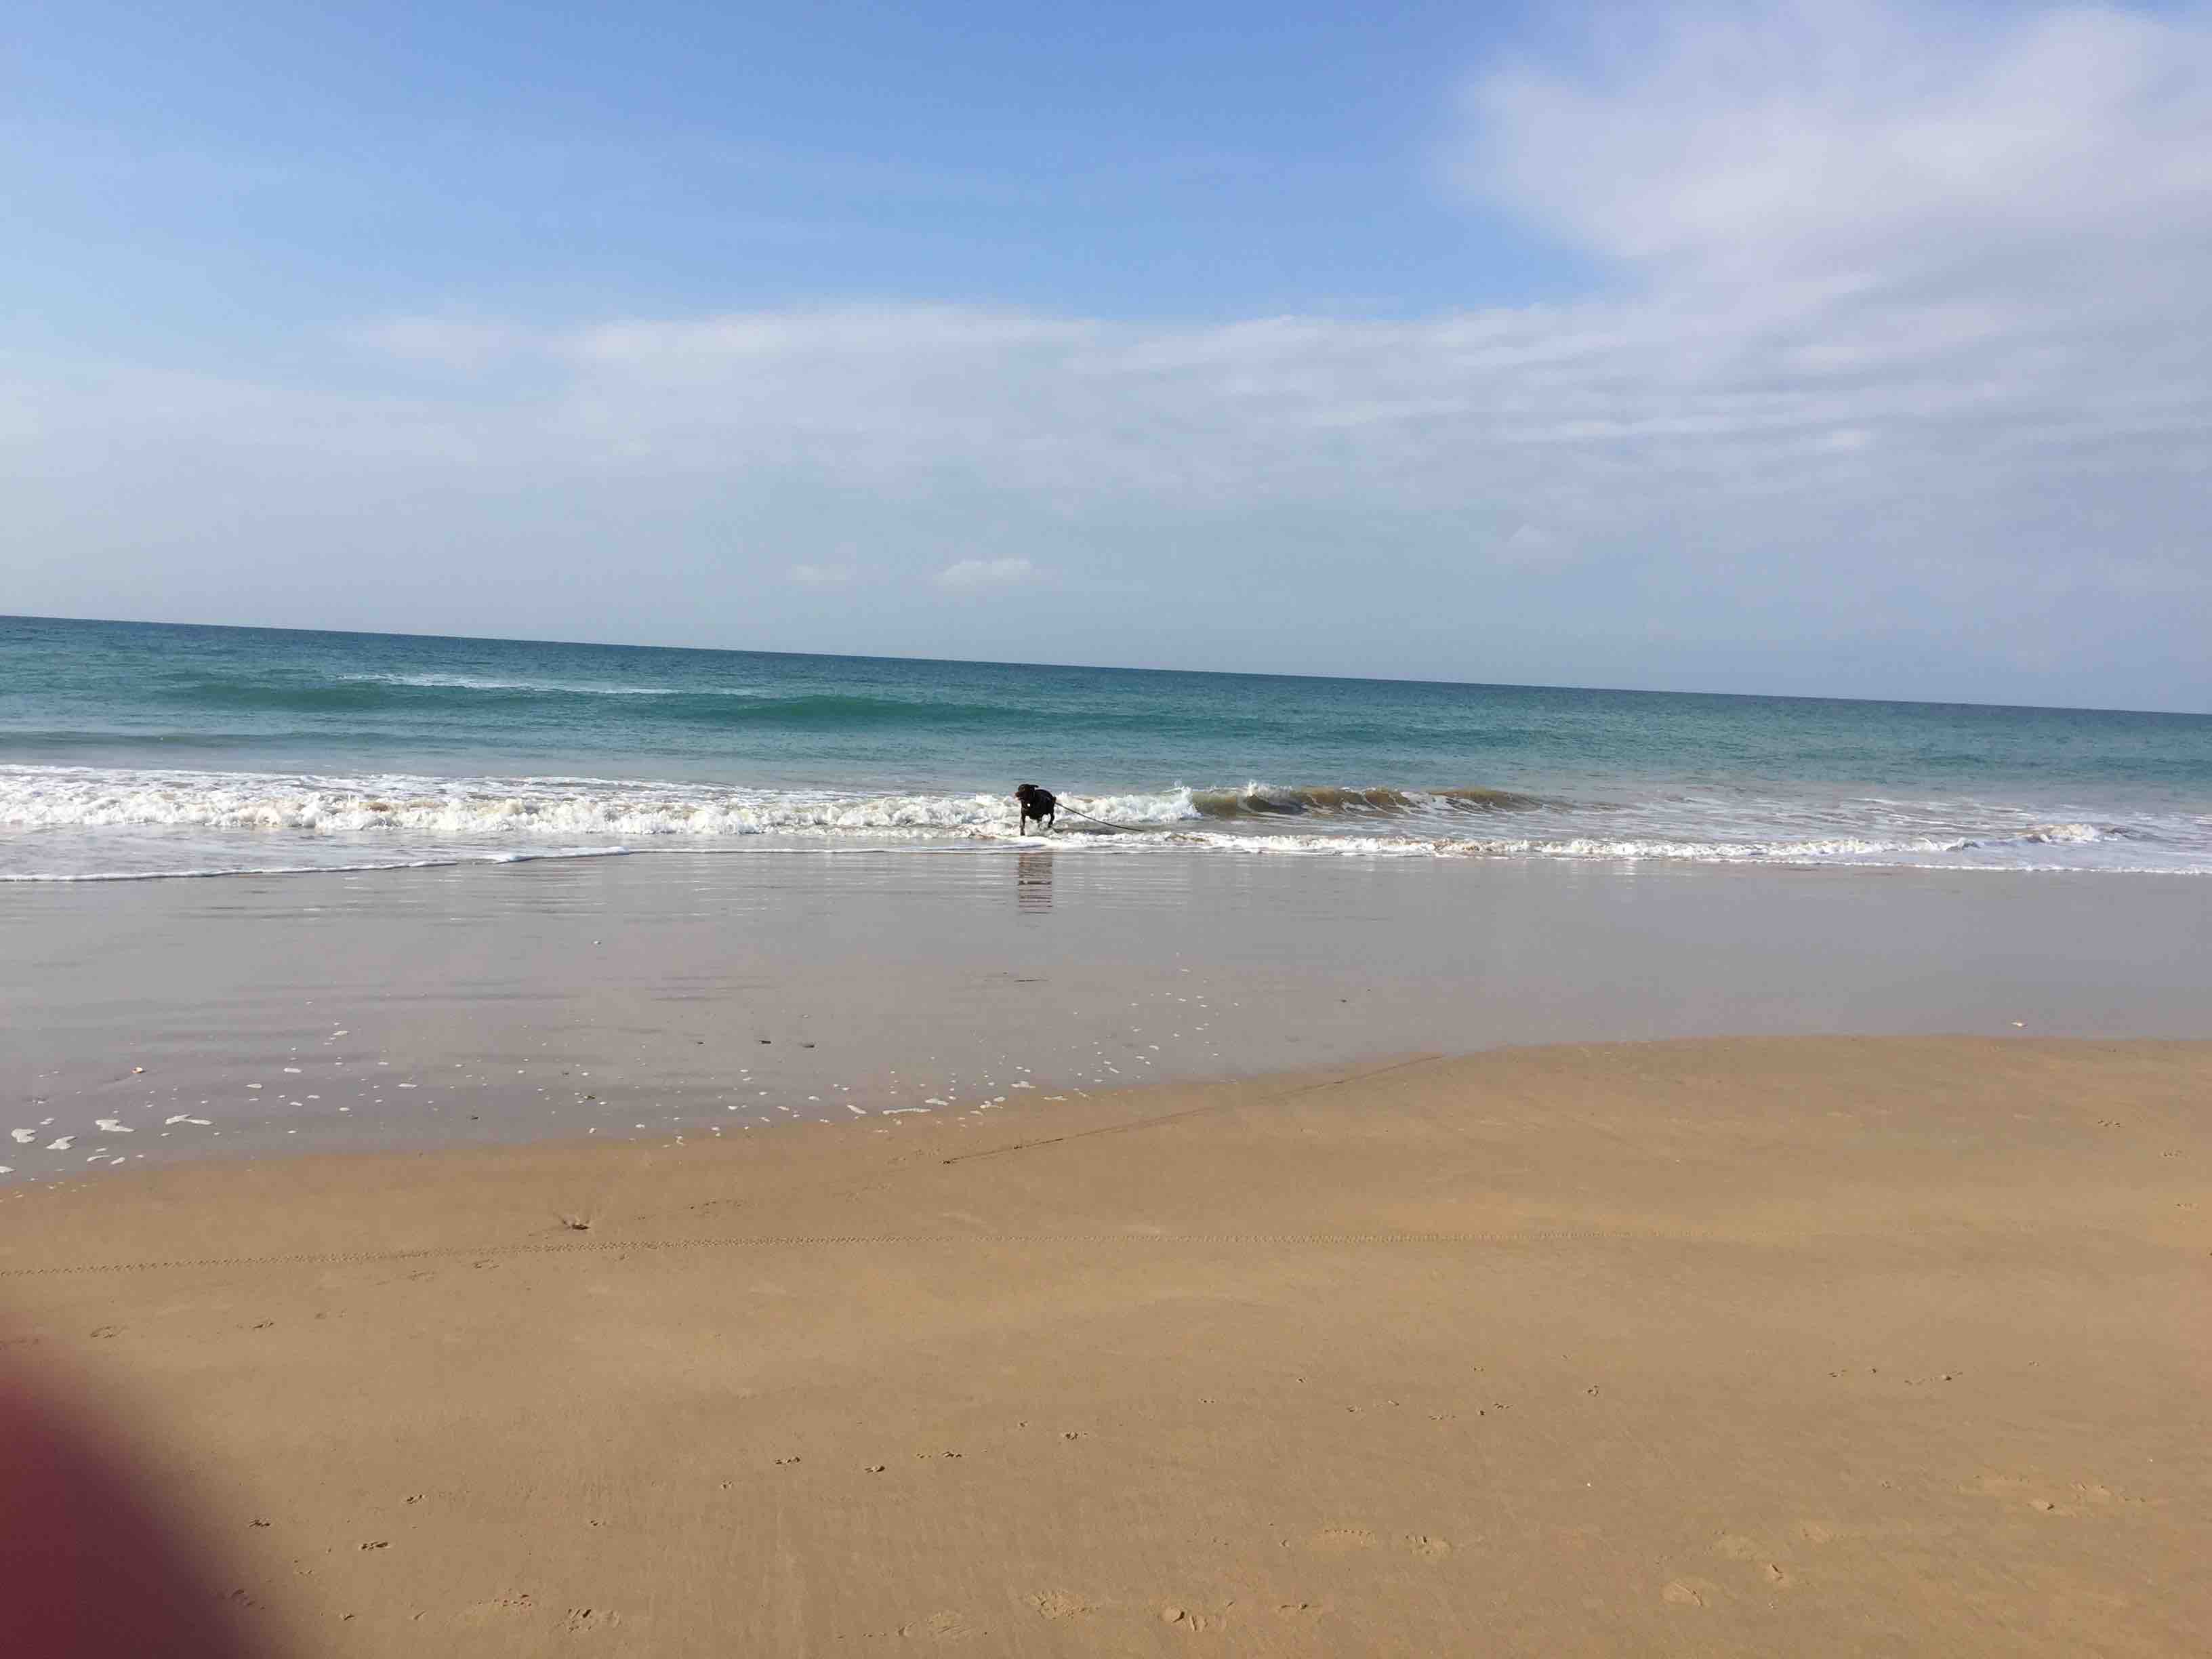 Ben rennt und rennt und rennt... Er liebt es hier am Strand von El Palmar!!!